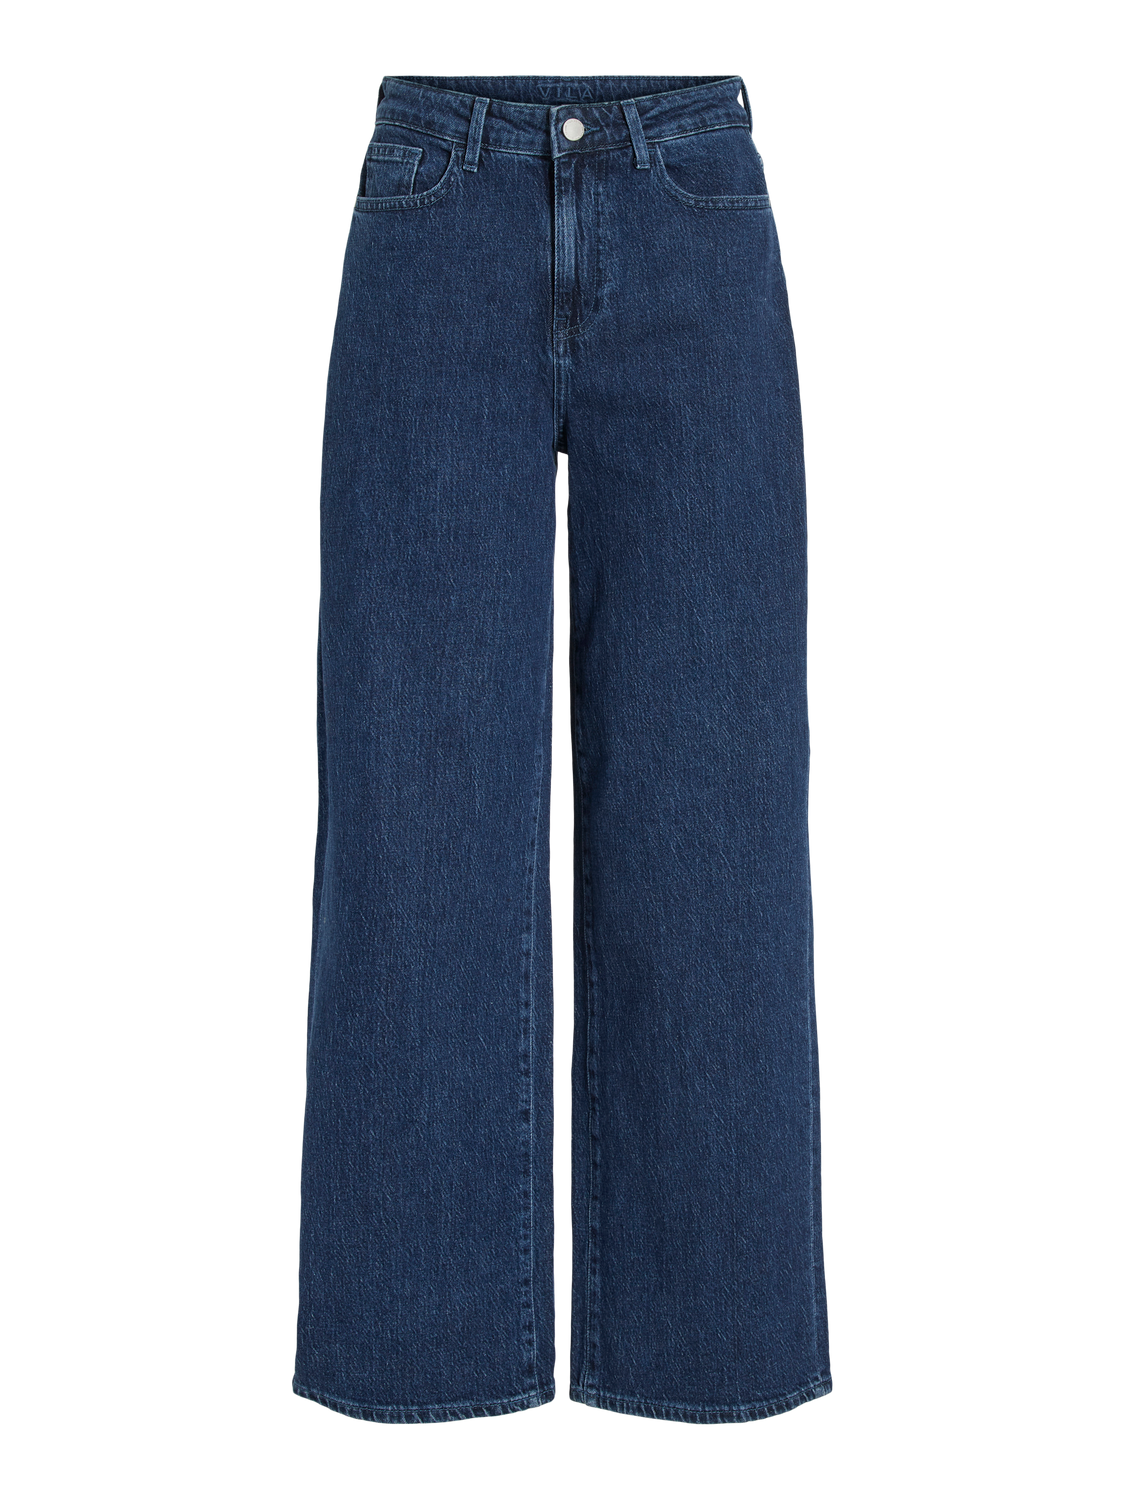 VIFREYA Jeans - Dark Blue Denim